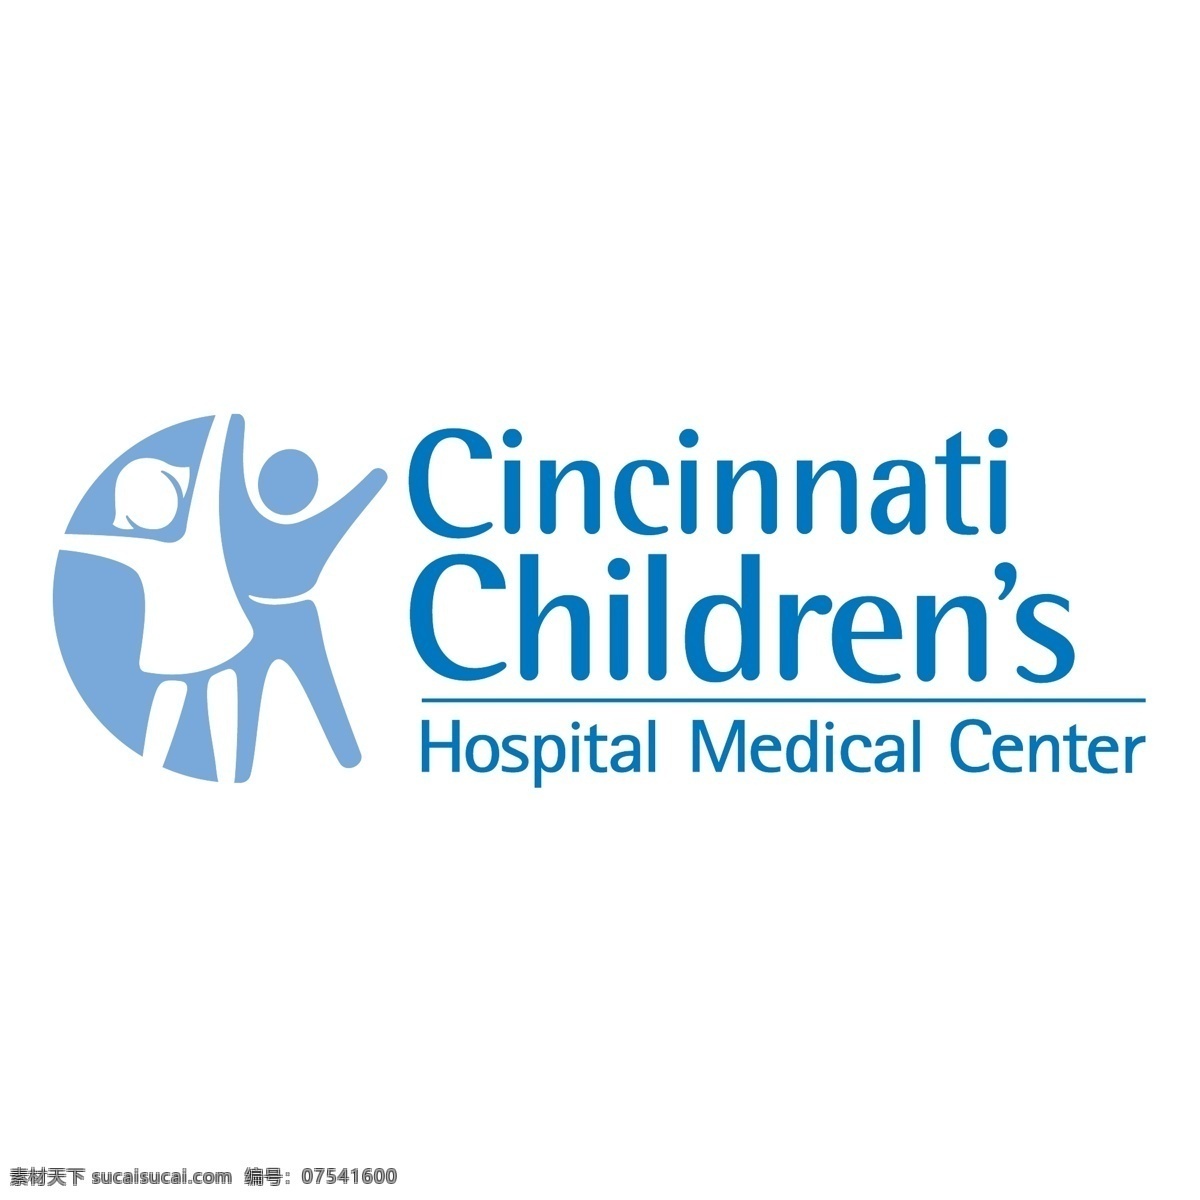 辛辛那提 儿童医院 医疗 中心 自由 医学 标志 免费 psd源文件 logo设计